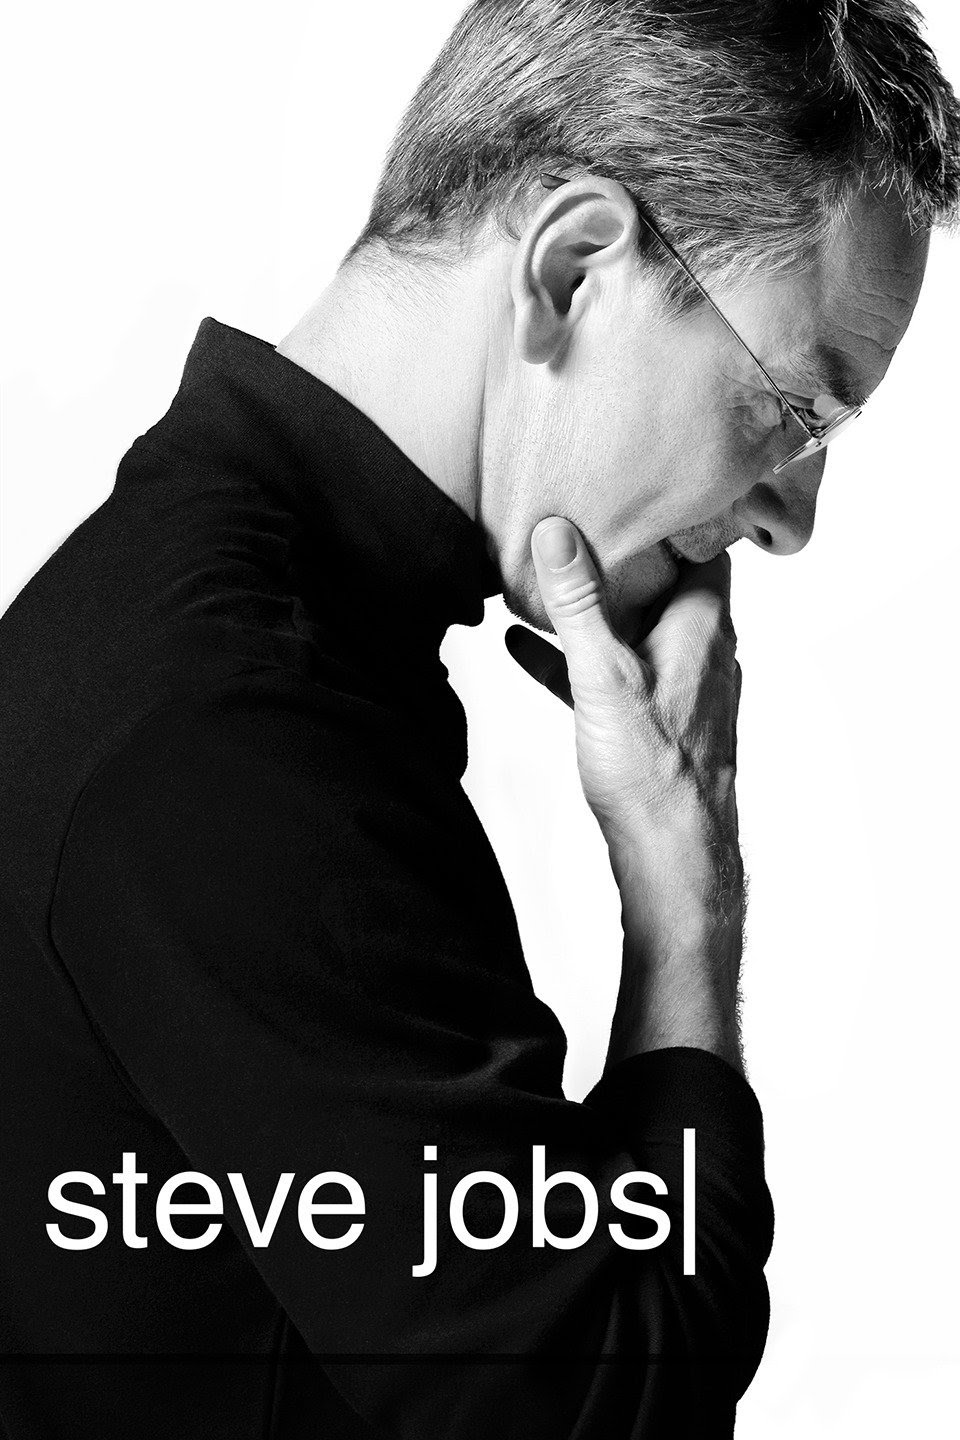 Film Inspirasi untuk Bangkit di Pandemi Covid - Steve Jobs